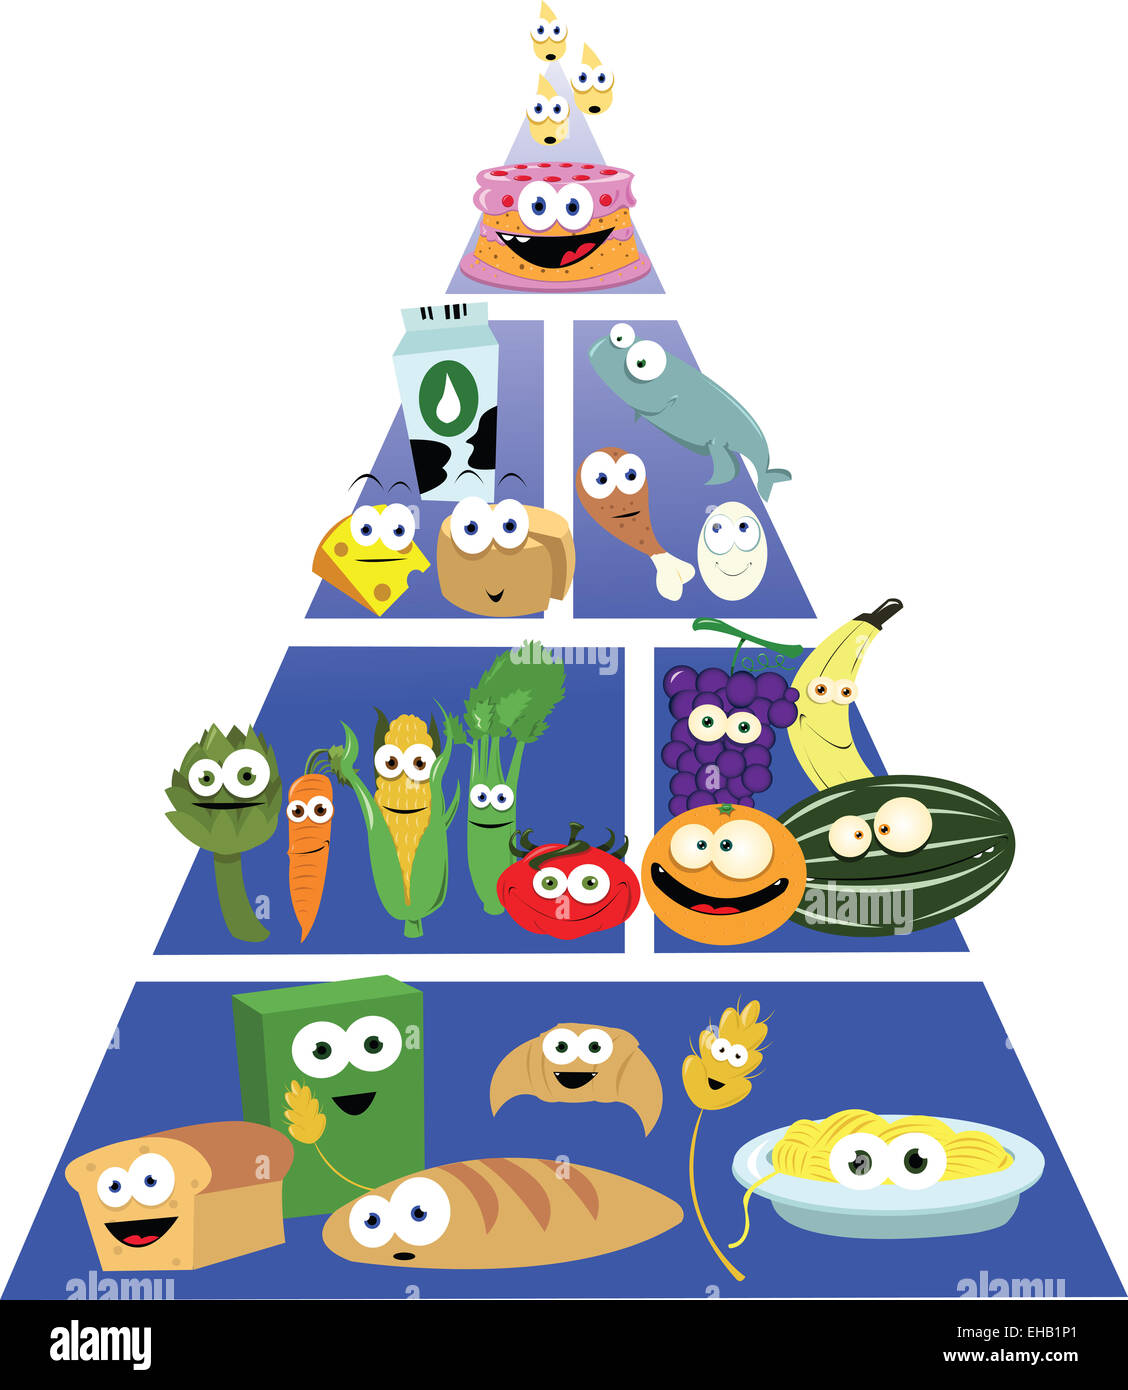 Ein Vektor Cartoon, eine lustige Lebensmittel-Pyramide darstellt, wird jedes Objekt einzeln gruppiert. Stockfoto